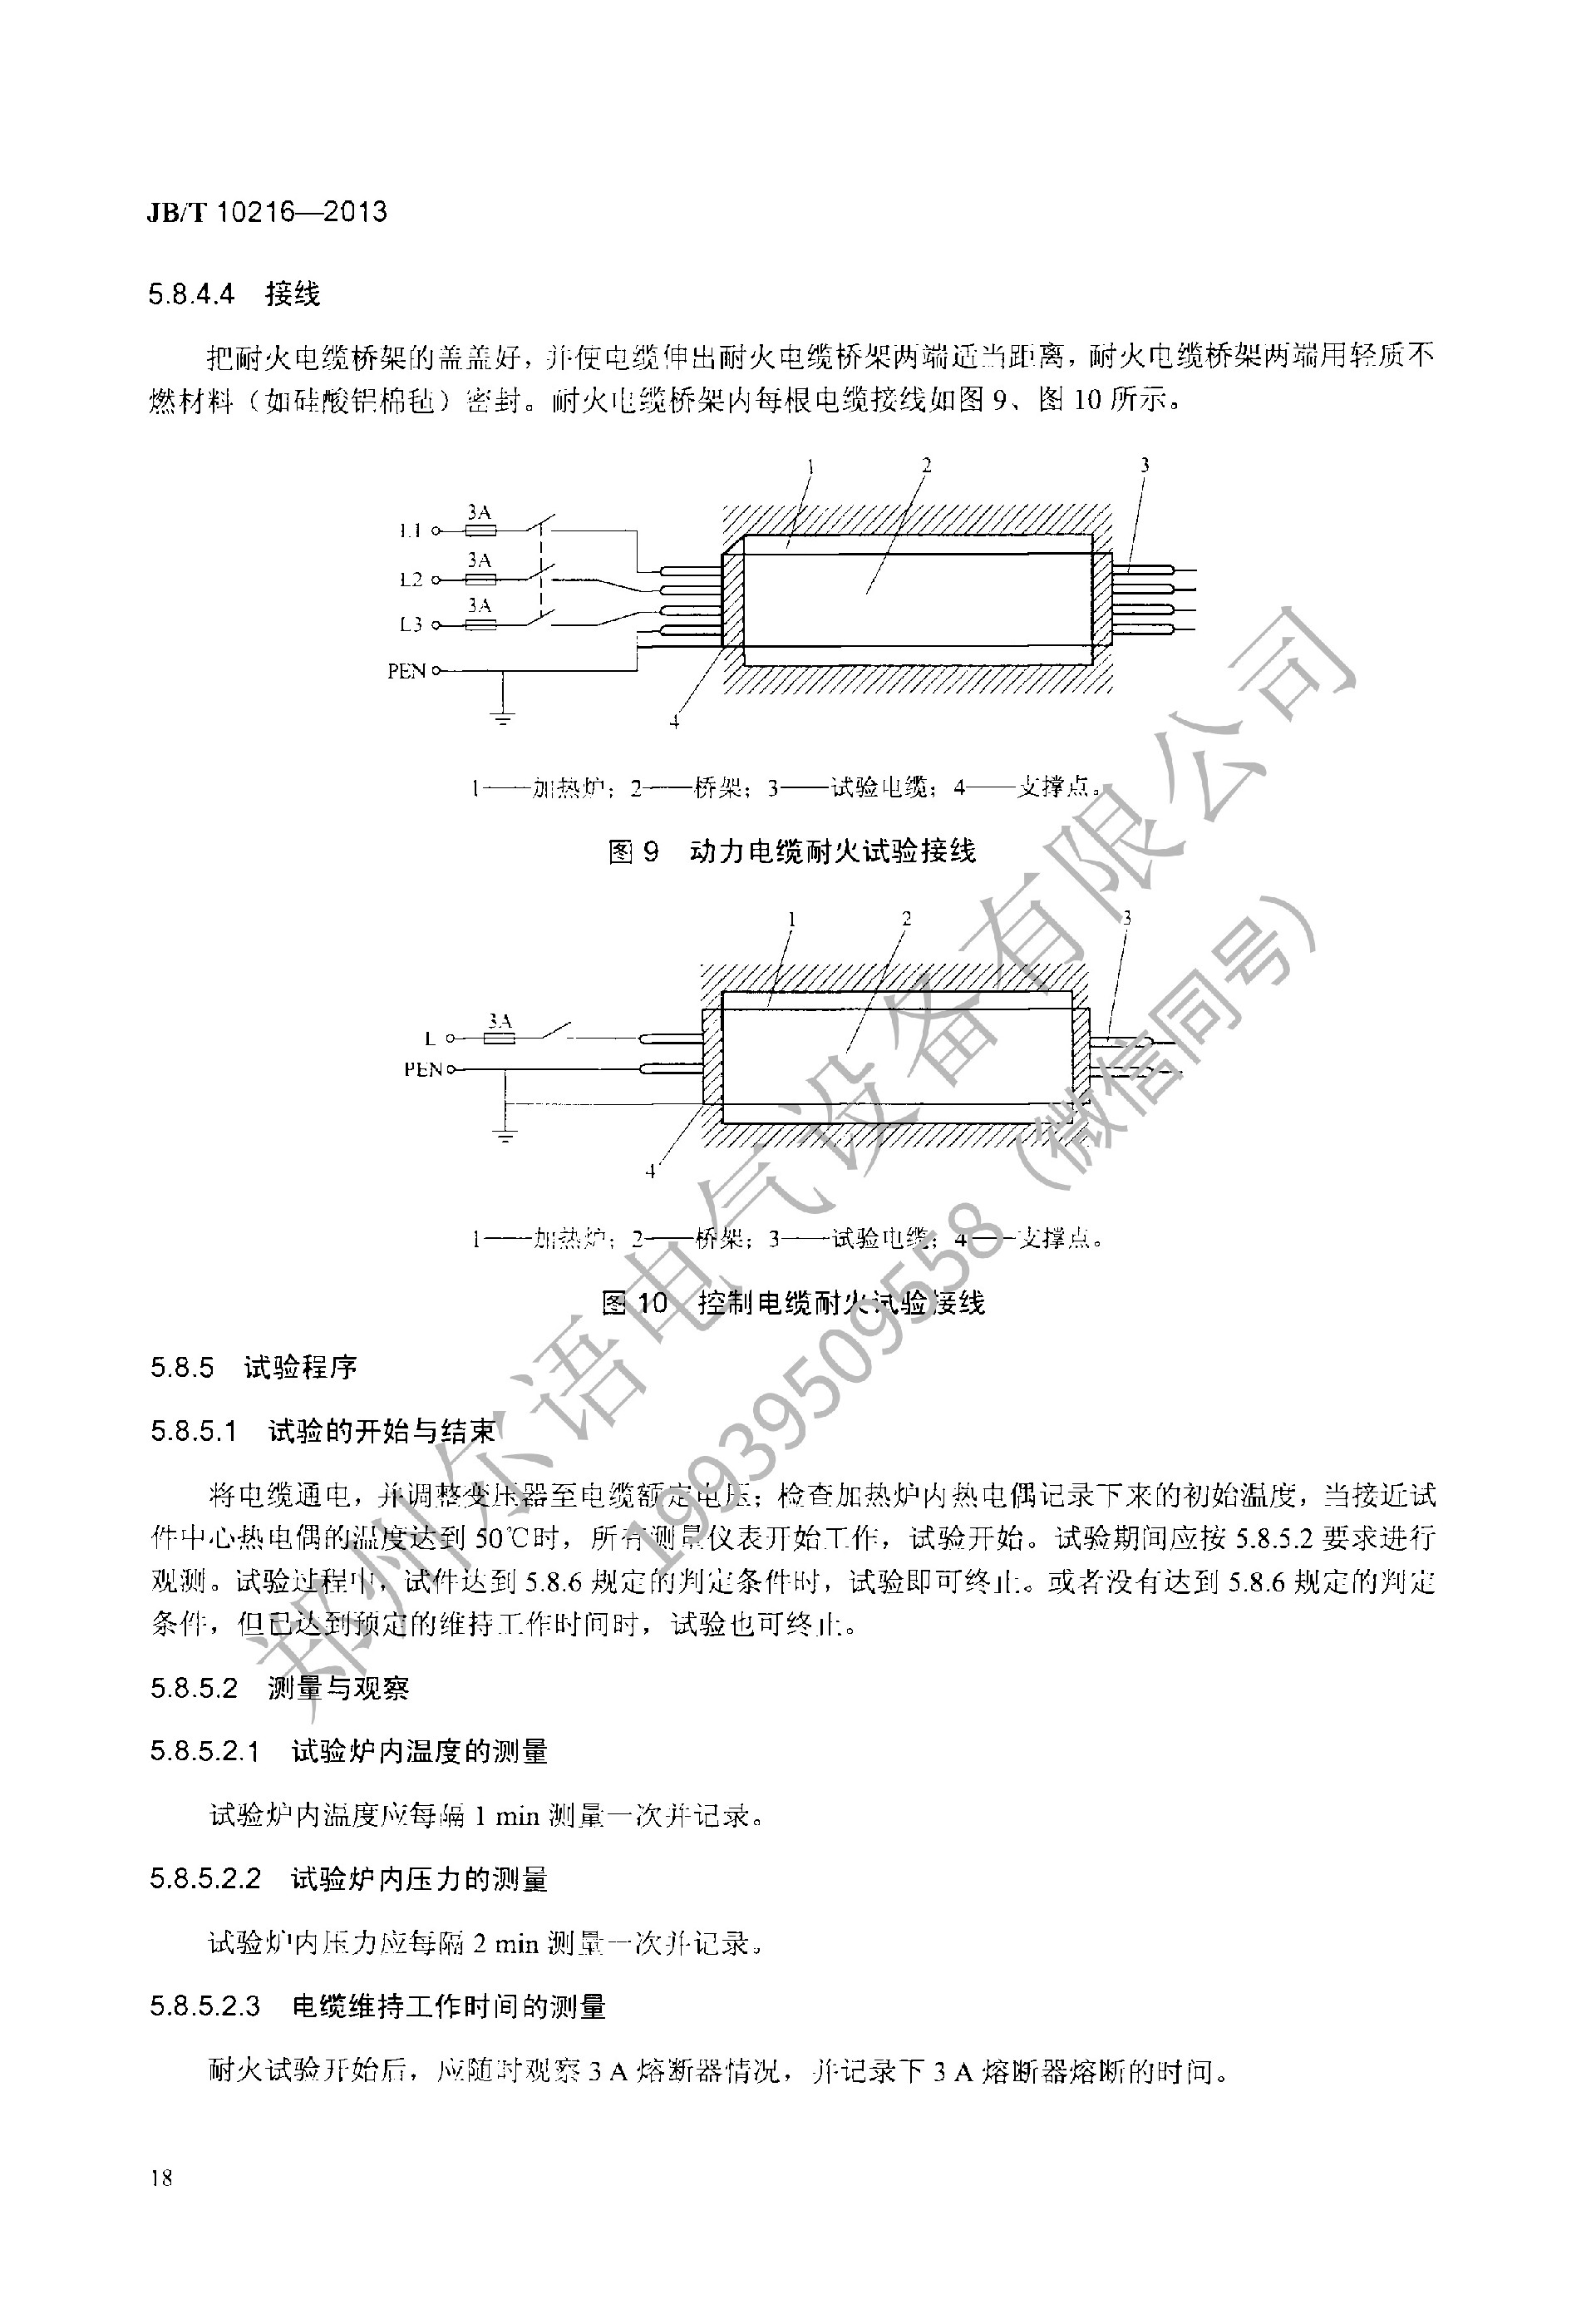 JBT-10216-2013-电控配电用电缆桥架(1)(1)--加水印-22.jpg